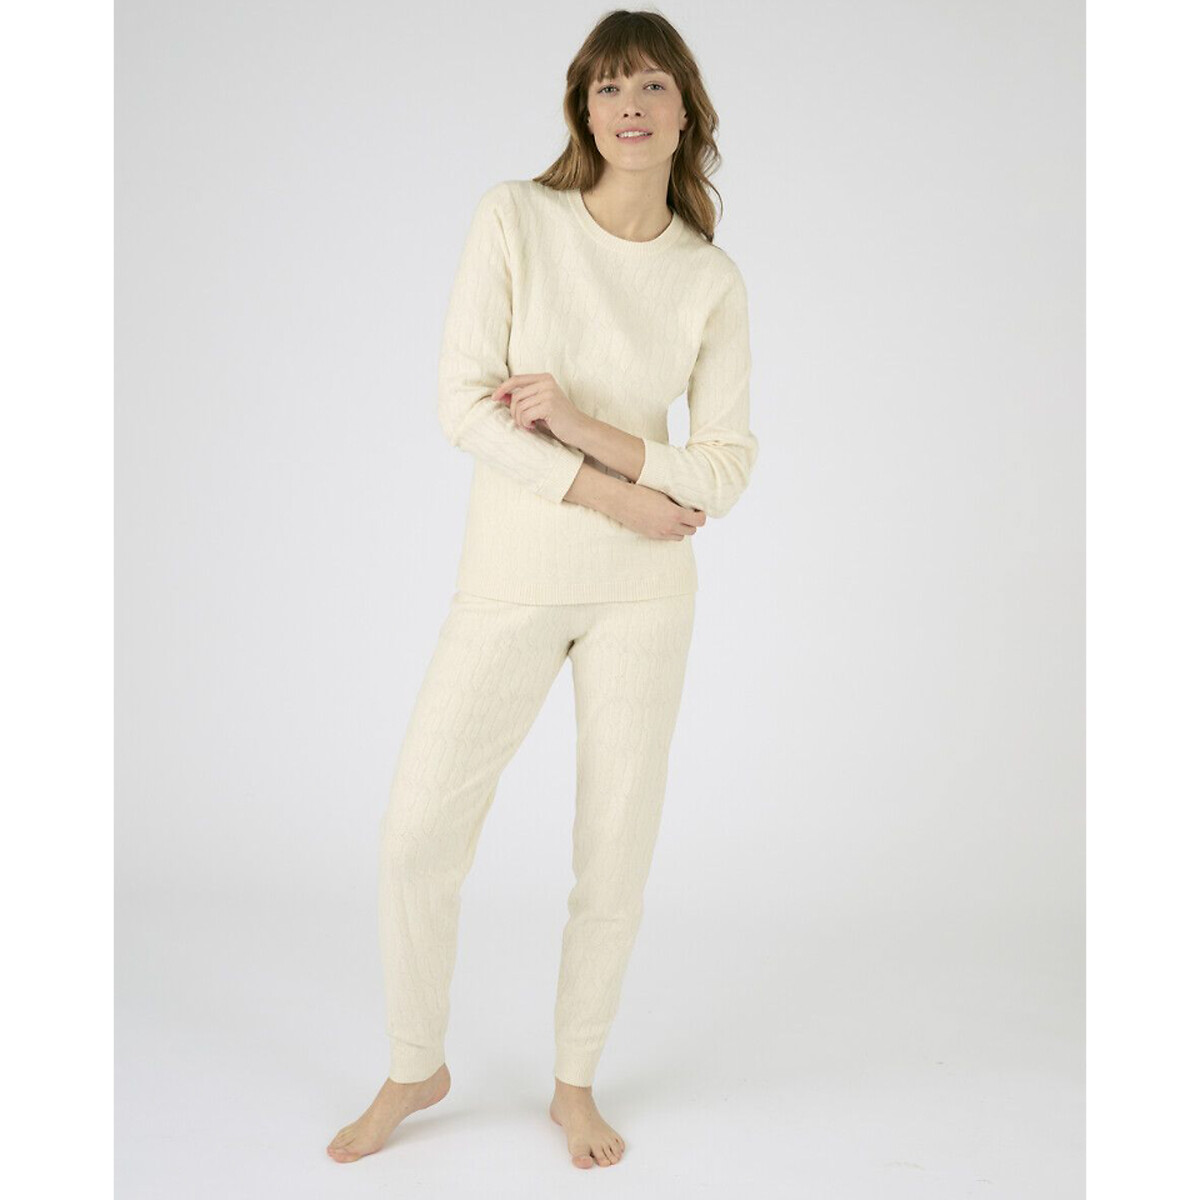 Комплект пижамный домашний La Redoute XXL белый комплект пижамный домашний la redoute xxl белый